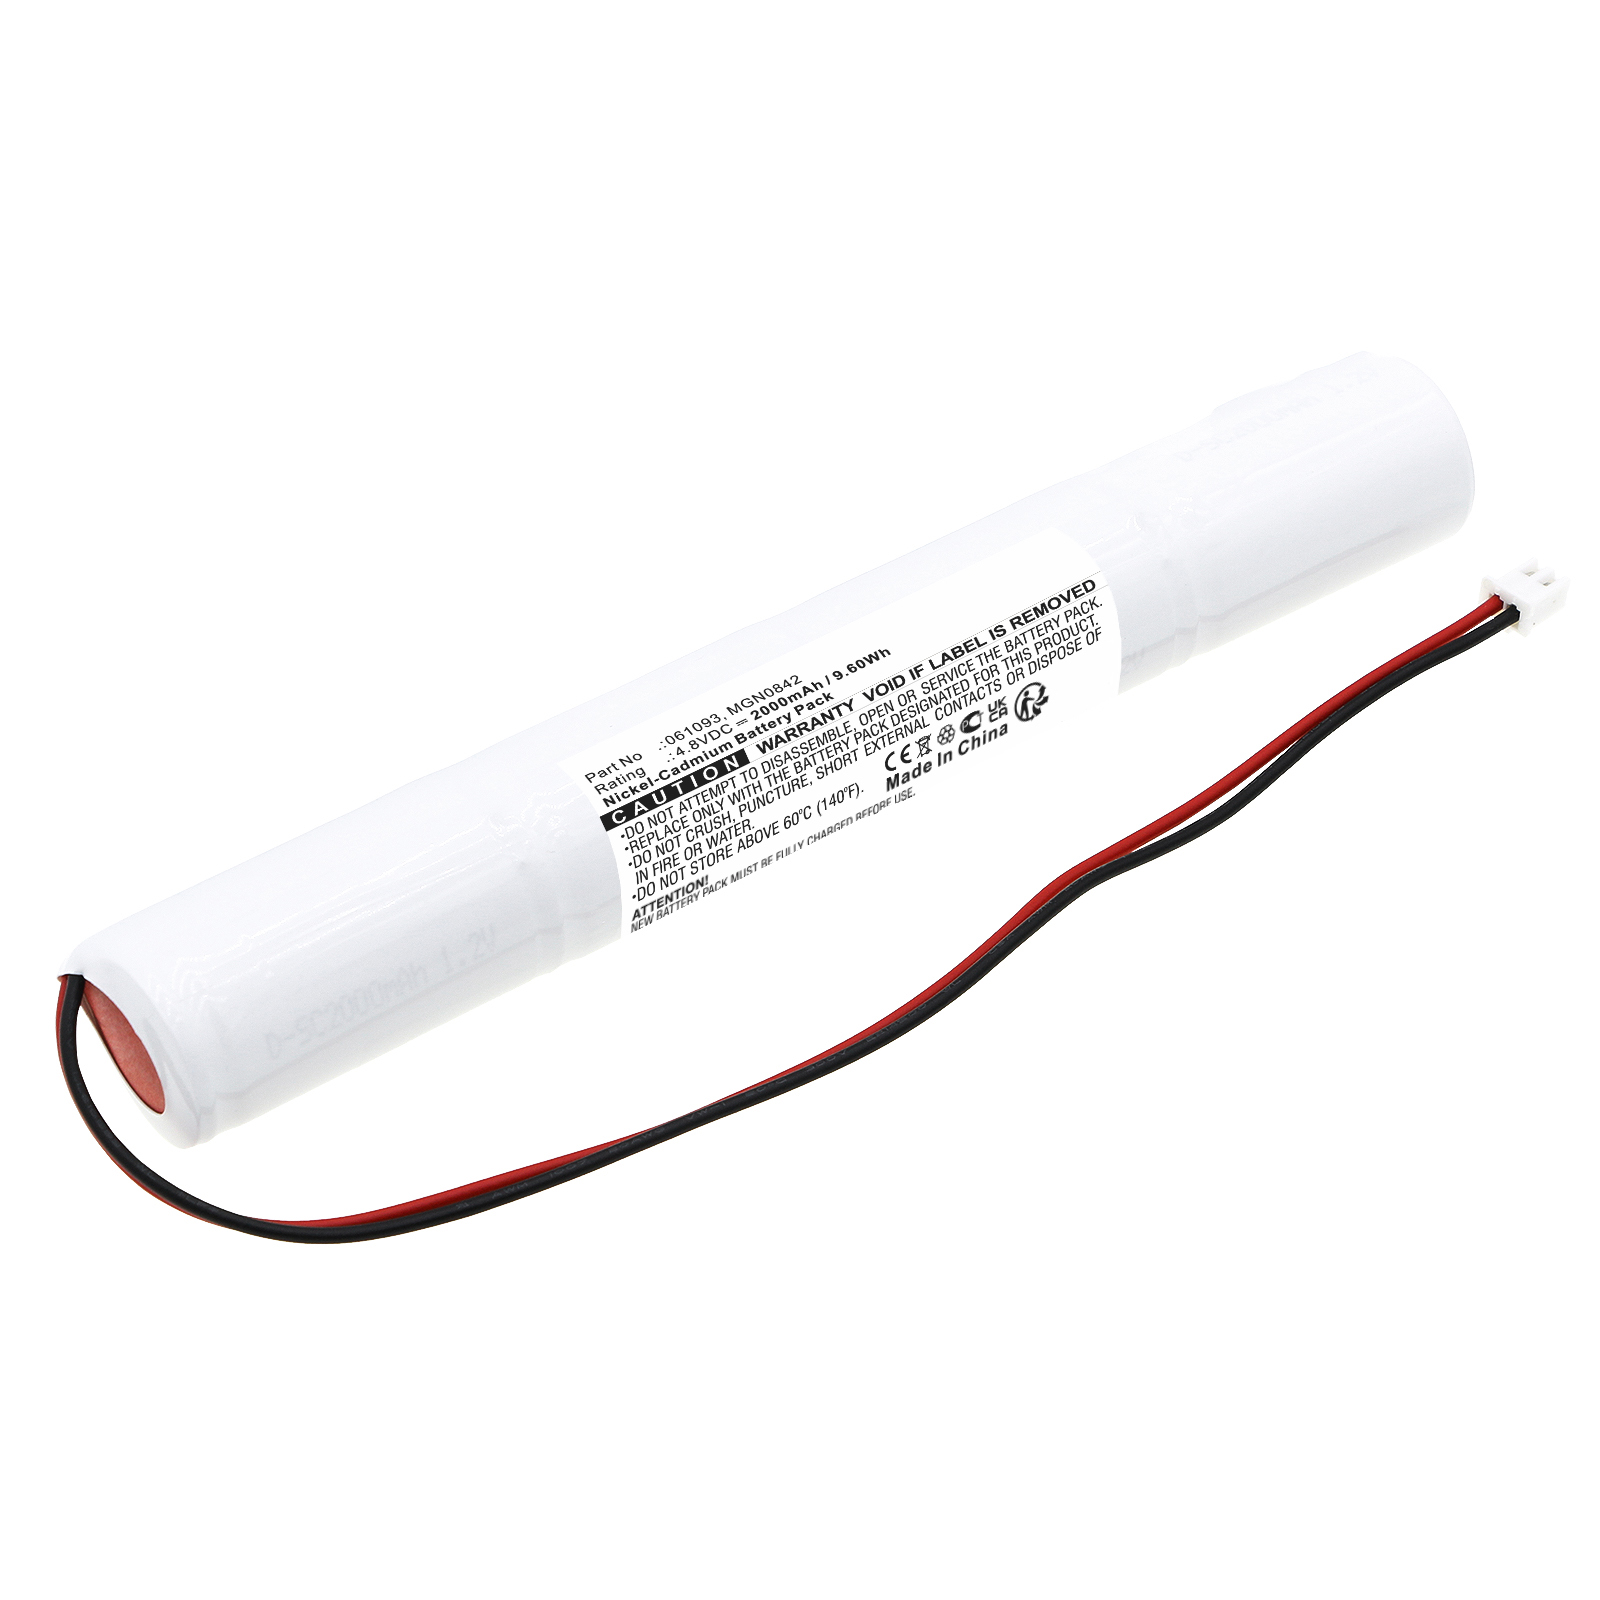 Synergy Digital Emergency Lighting Battery, Compatible with Legrand 061093 Emergency Lighting Battery (Ni-CD, 4.8V, 2000mAh)